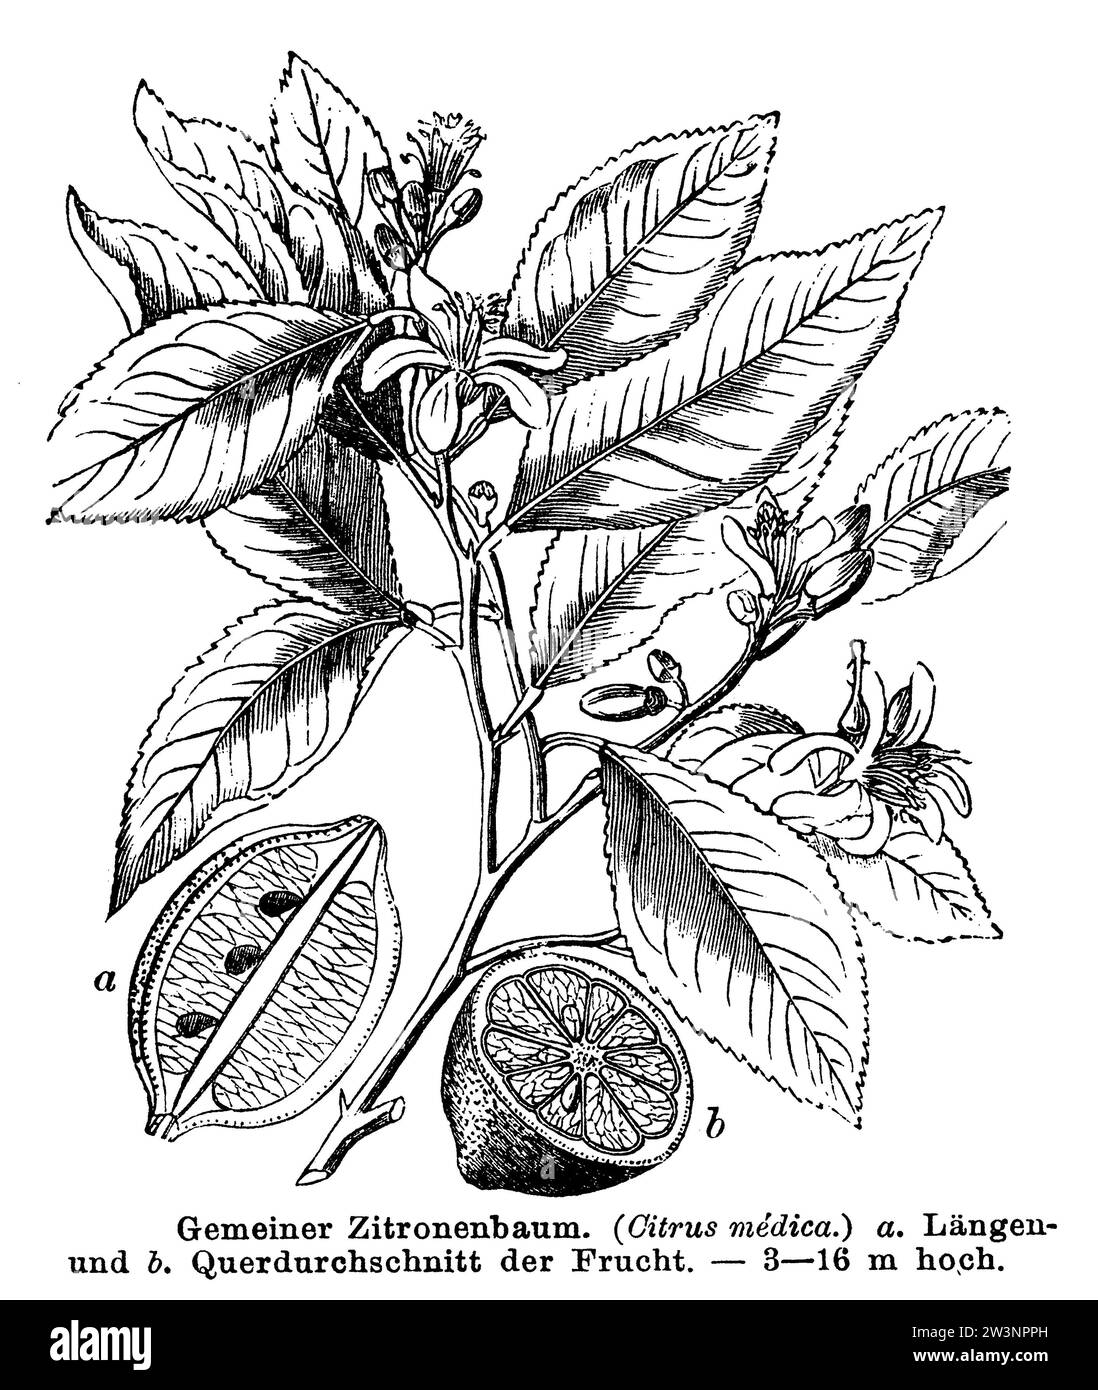 Citron, Citrus limon, anonym (livre botanique, 1884), Zitrone, citron Banque D'Images